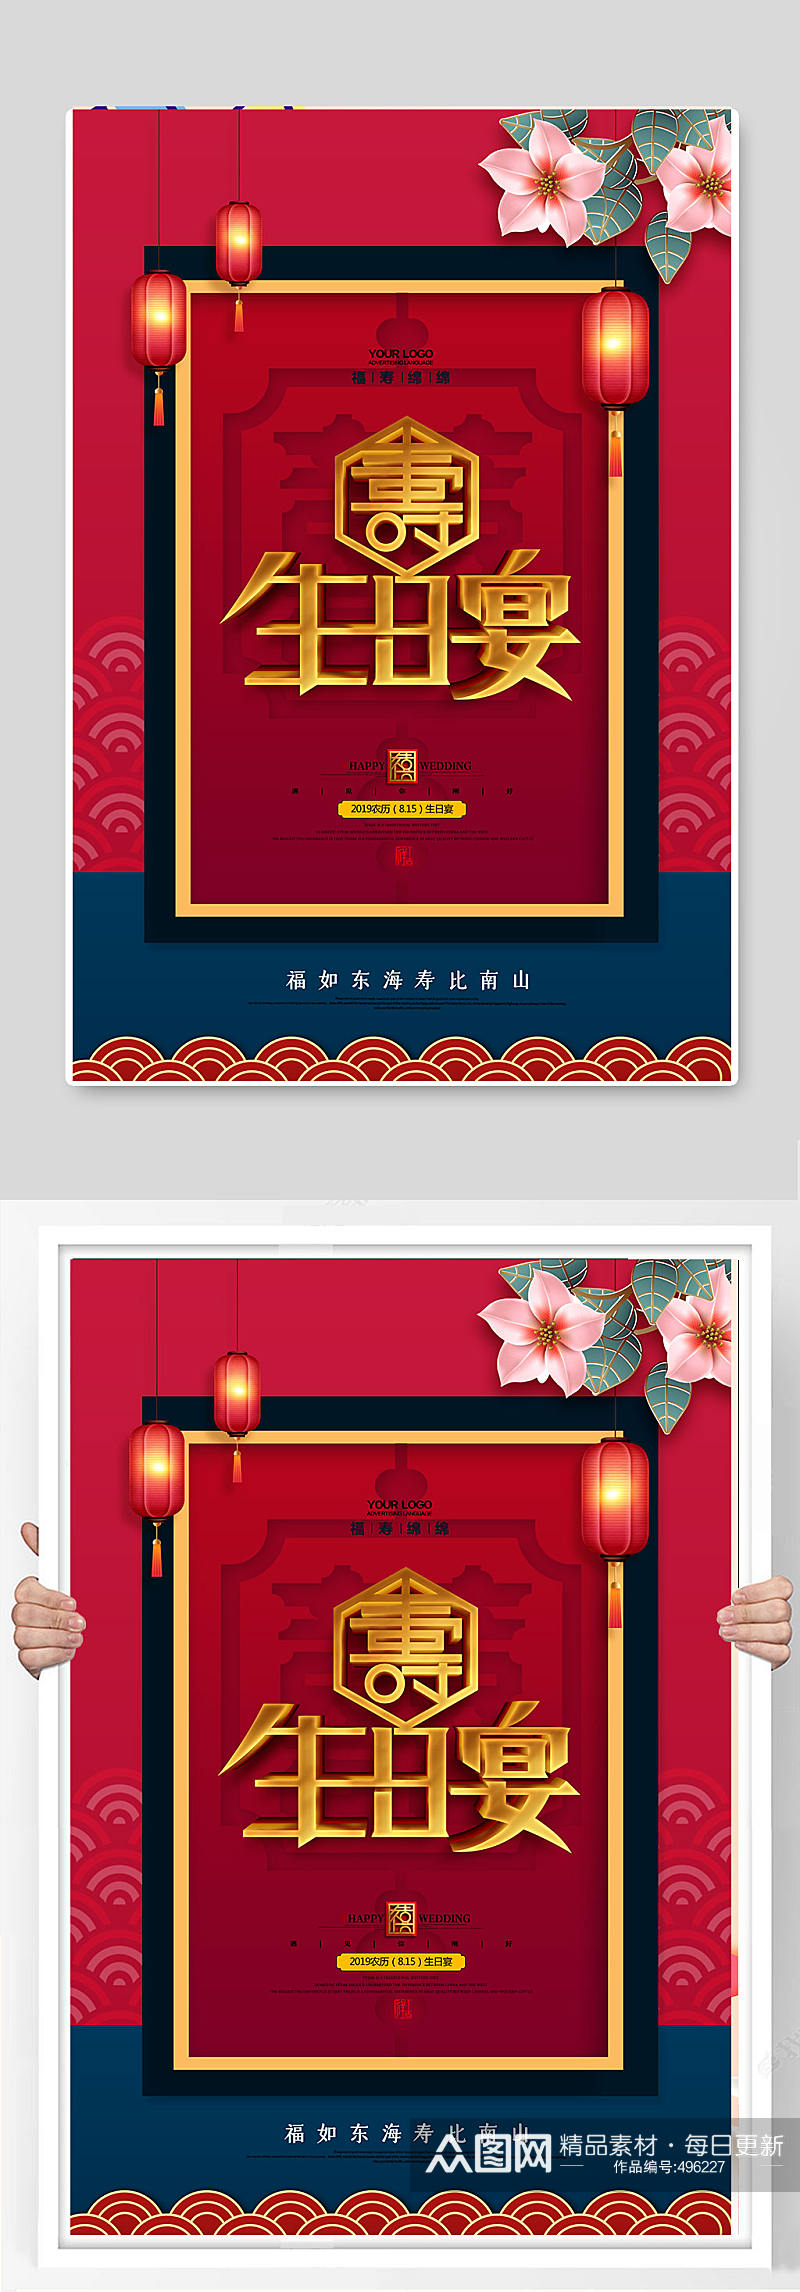 中国红喜庆寿宴生日 生日宴海报素材